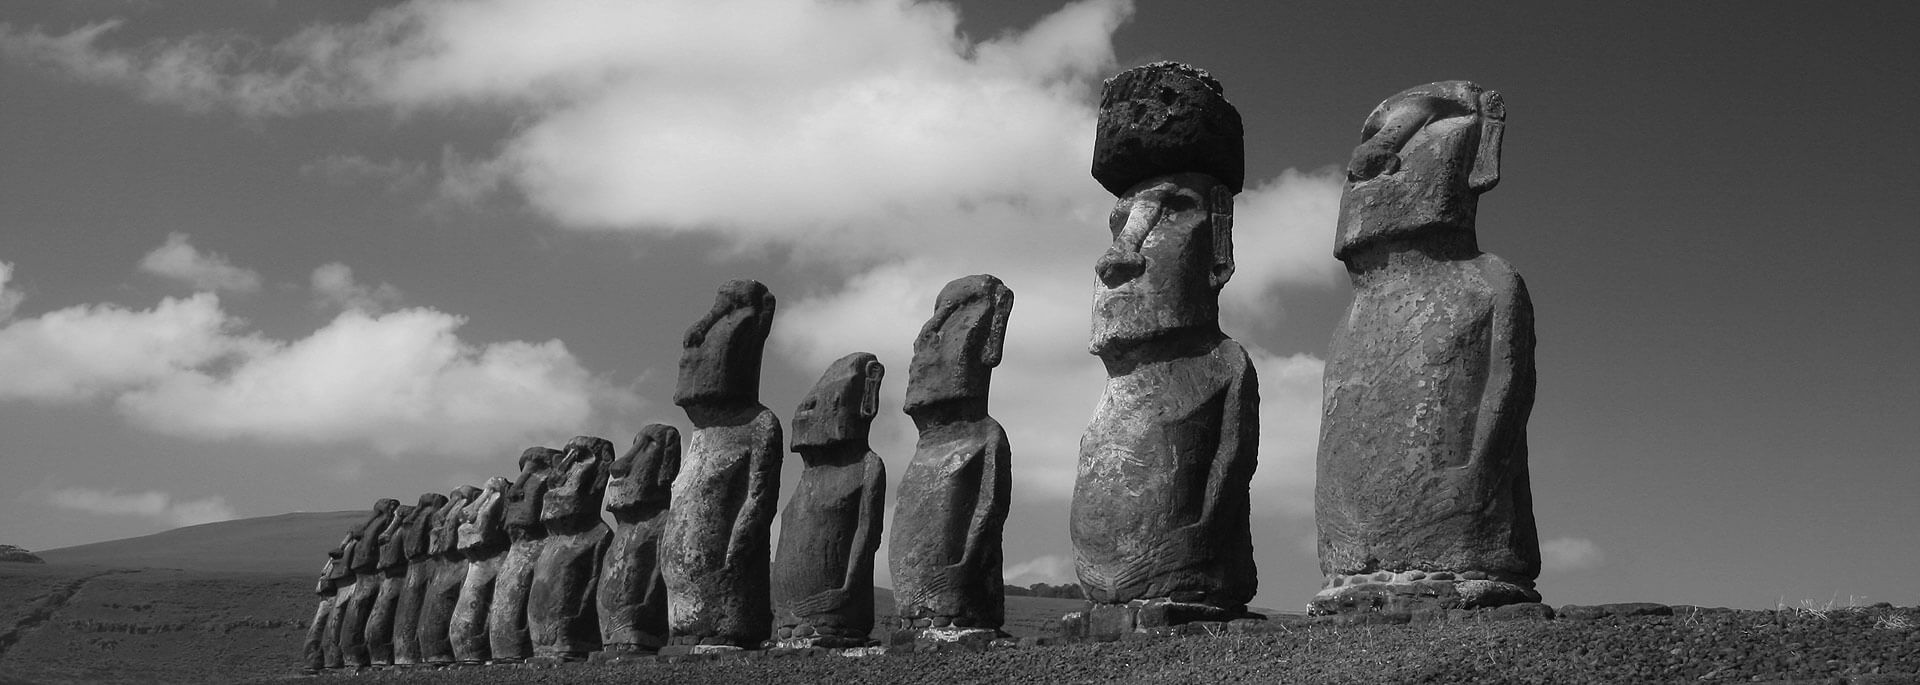 Fotos: Moai der Osterinsel in Schwarzweiß